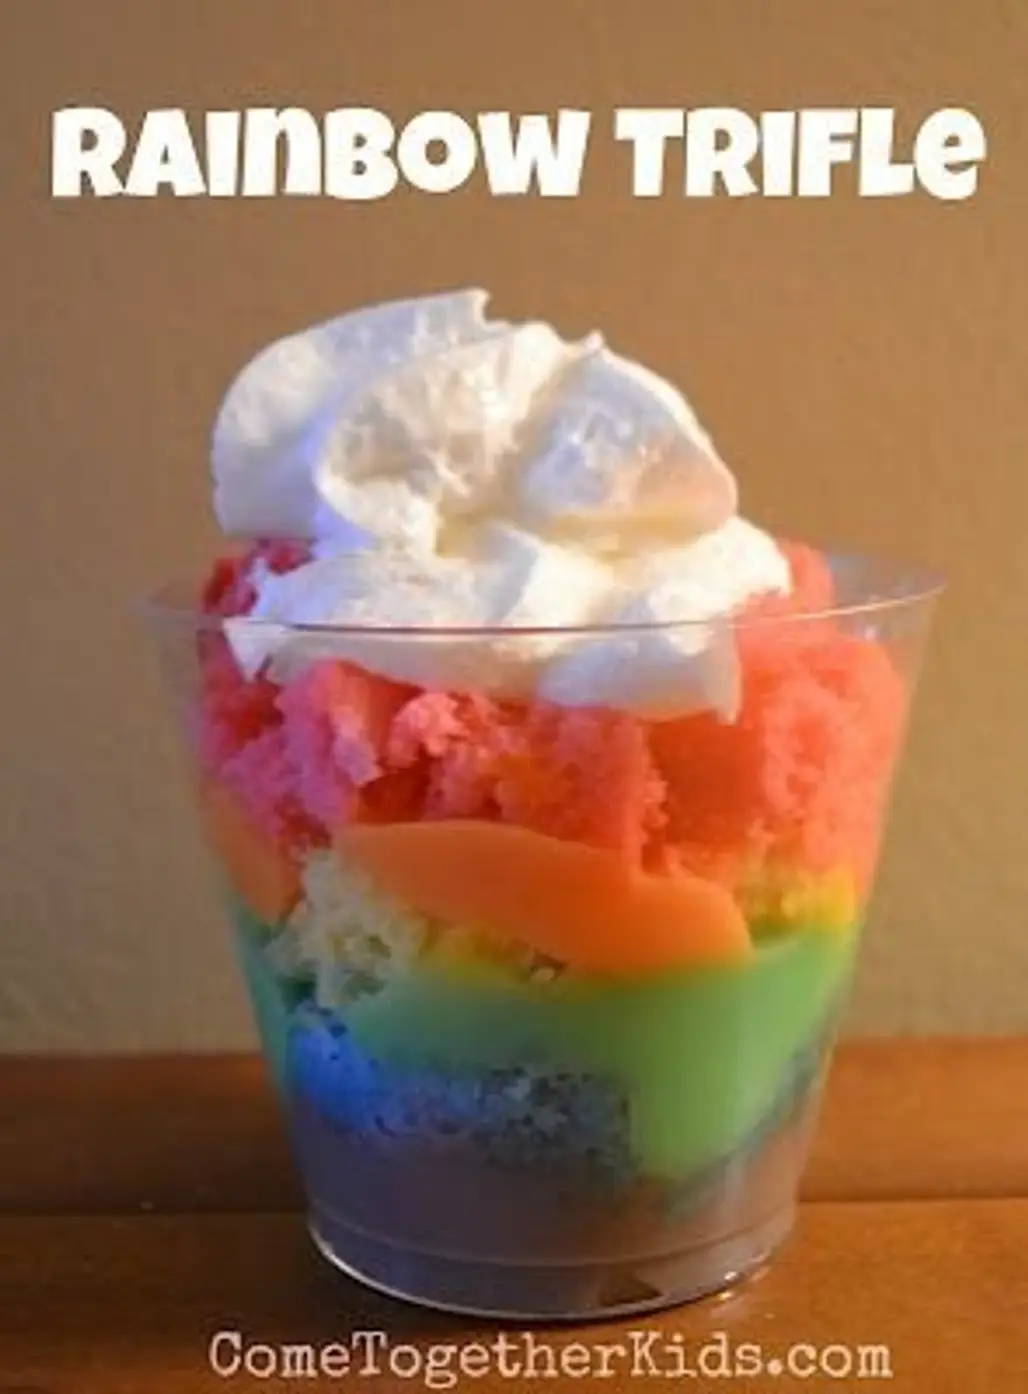 Rainbow Trifles